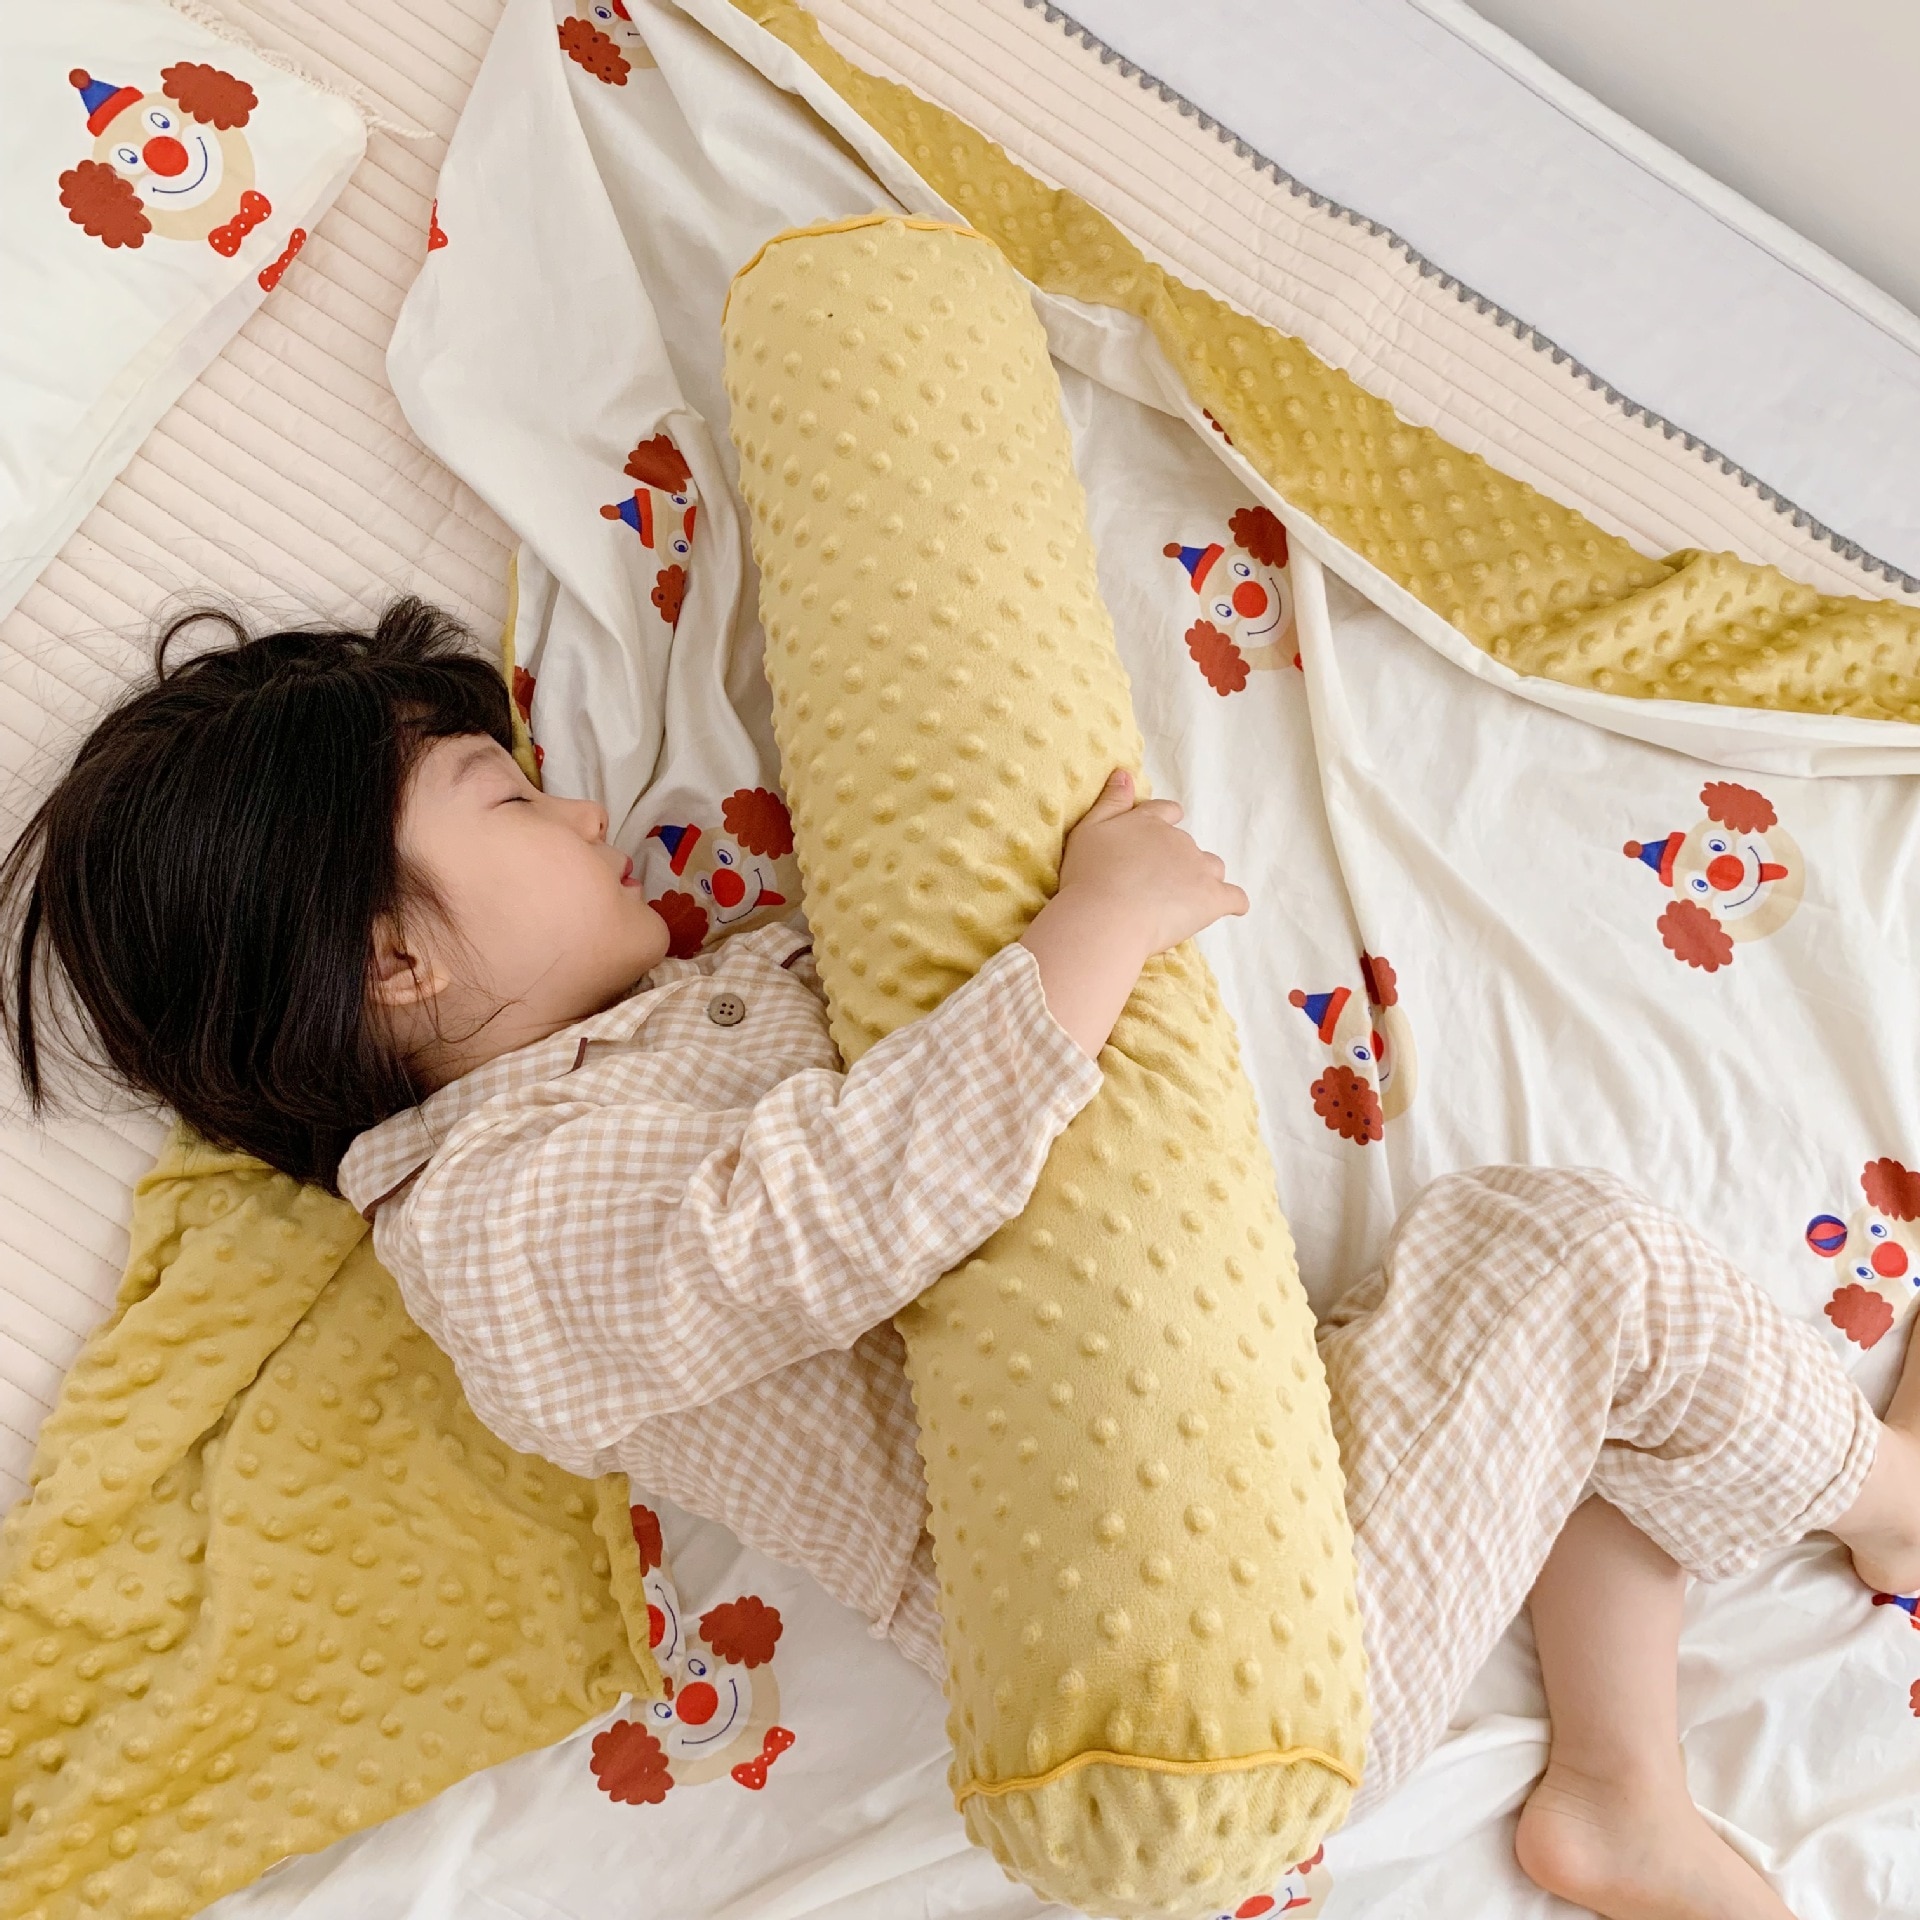 Baby kofanger seng fletning knude styrke pude omgivet til spædbarn bebe krybbe beskytter barneseng kofanger værelse indretning dreng pige seng rundt